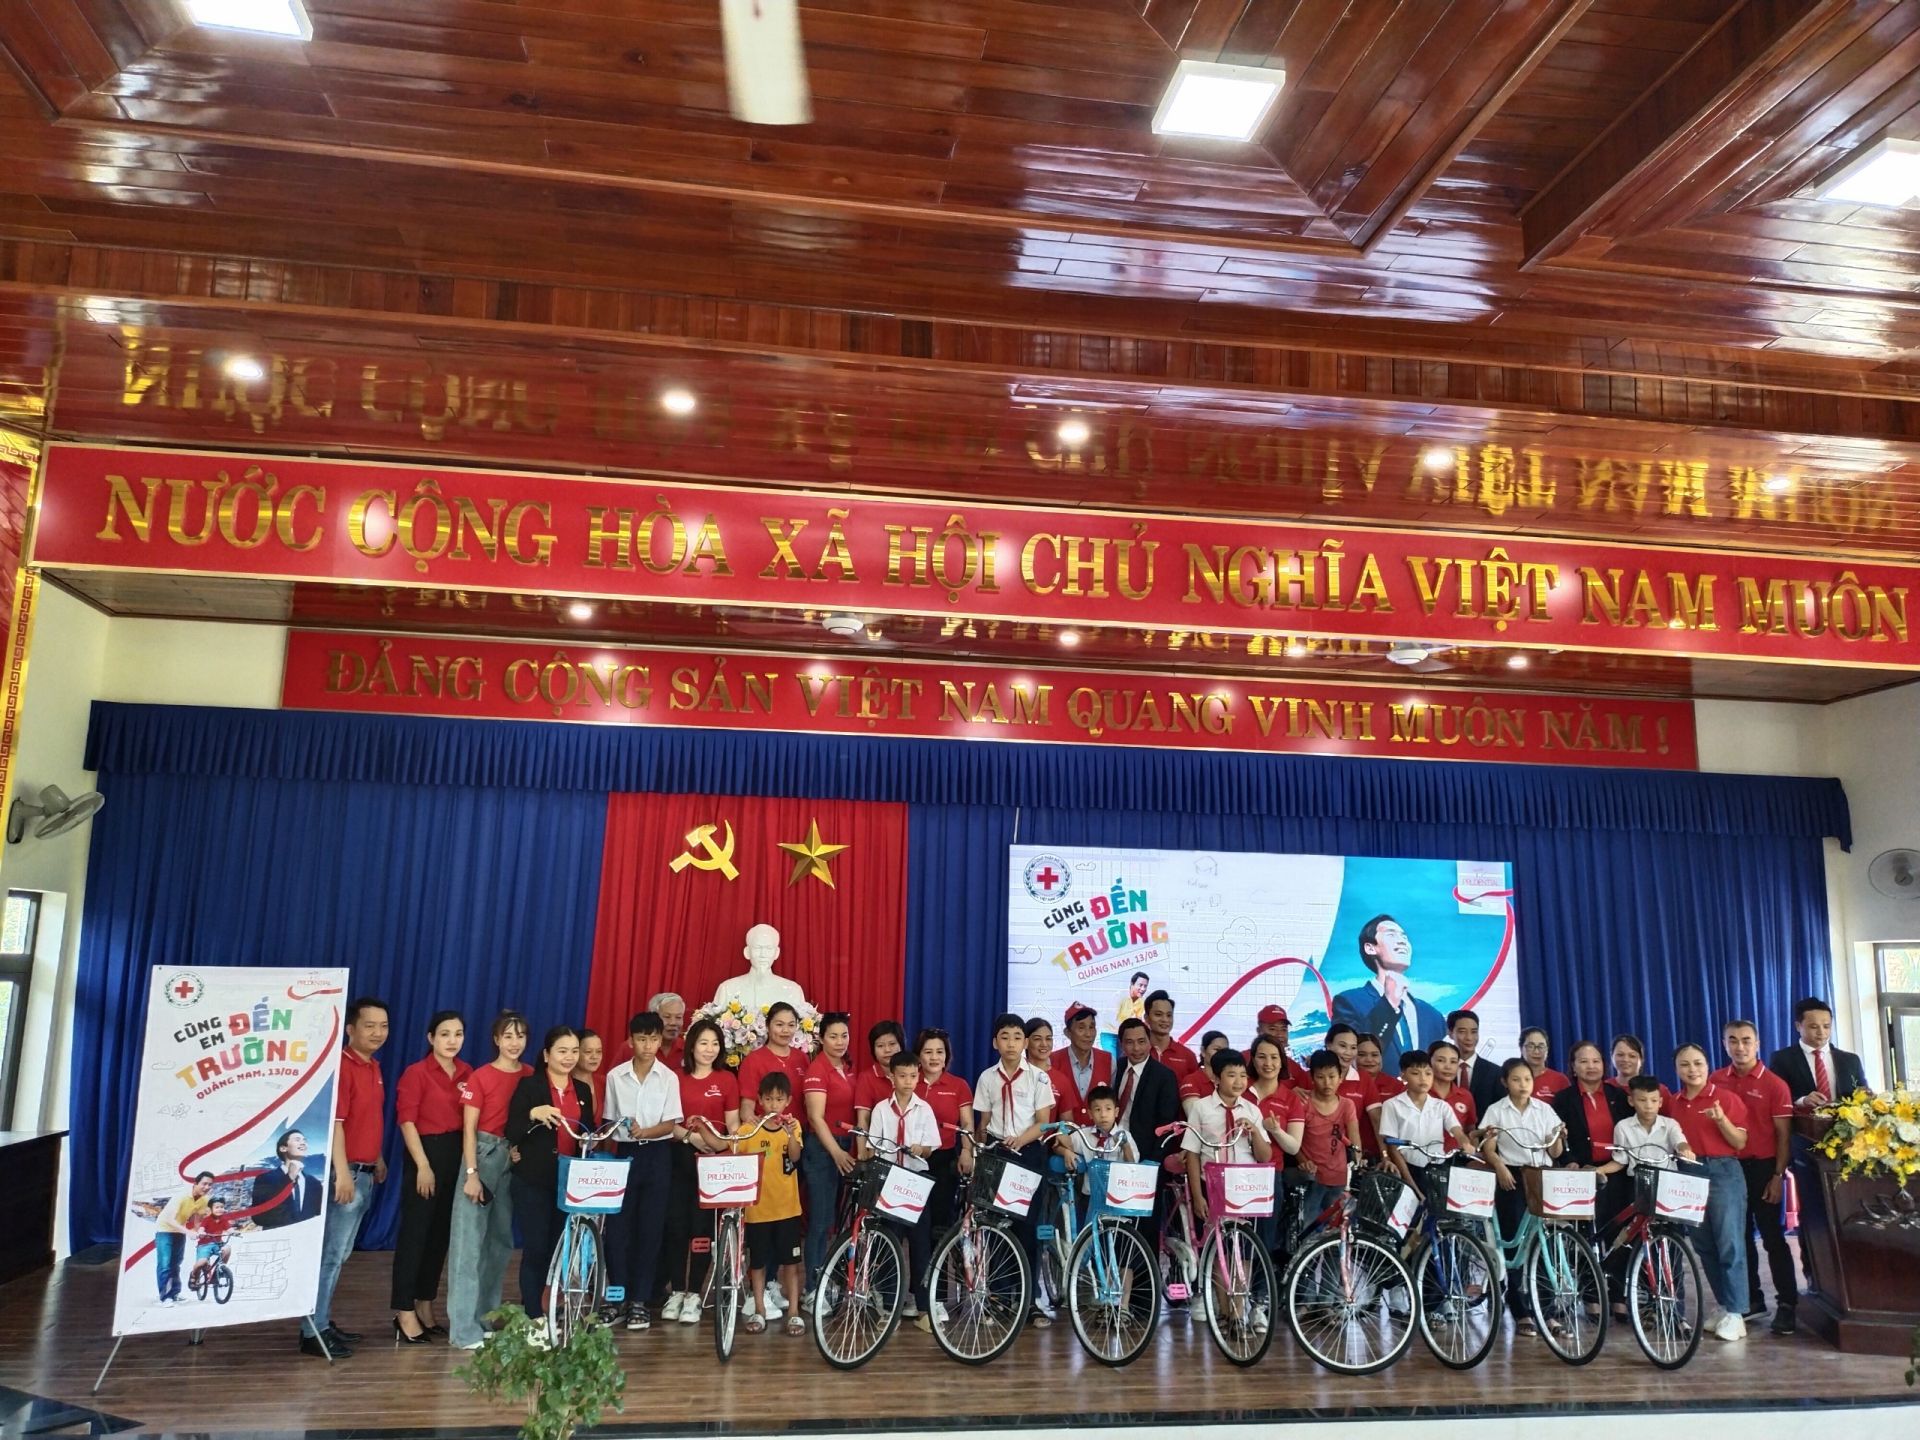 Chương trình “Cùng em đến trường” do Prudential phối hợp cùng Hội Chữ thập đỏ tỉnh Quảng Nam